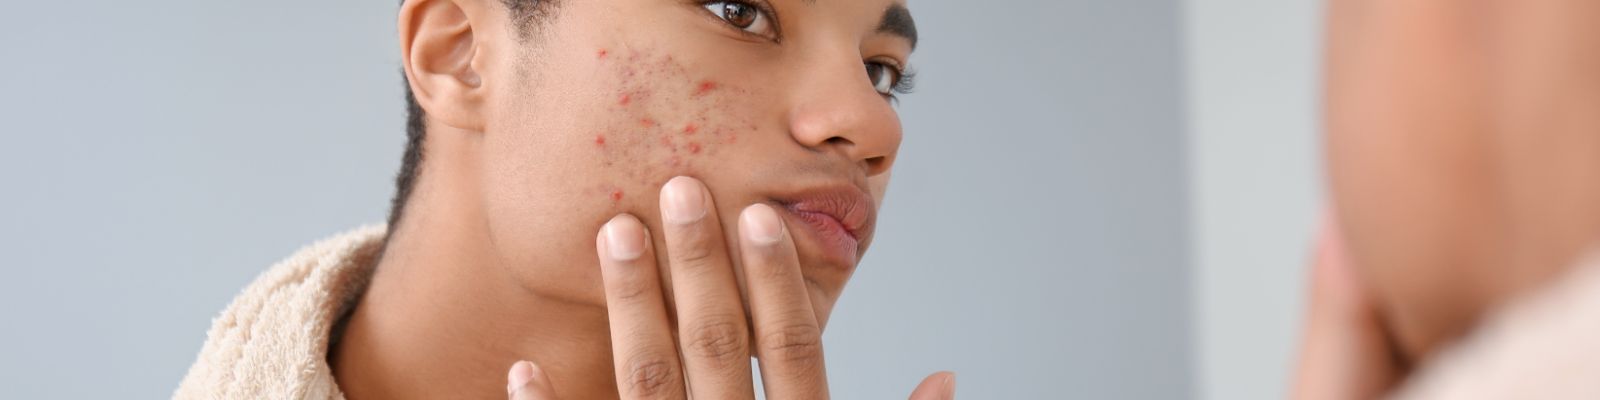 Acné chez l’adolescent : 5 astuces pour prendre soins de sa peau